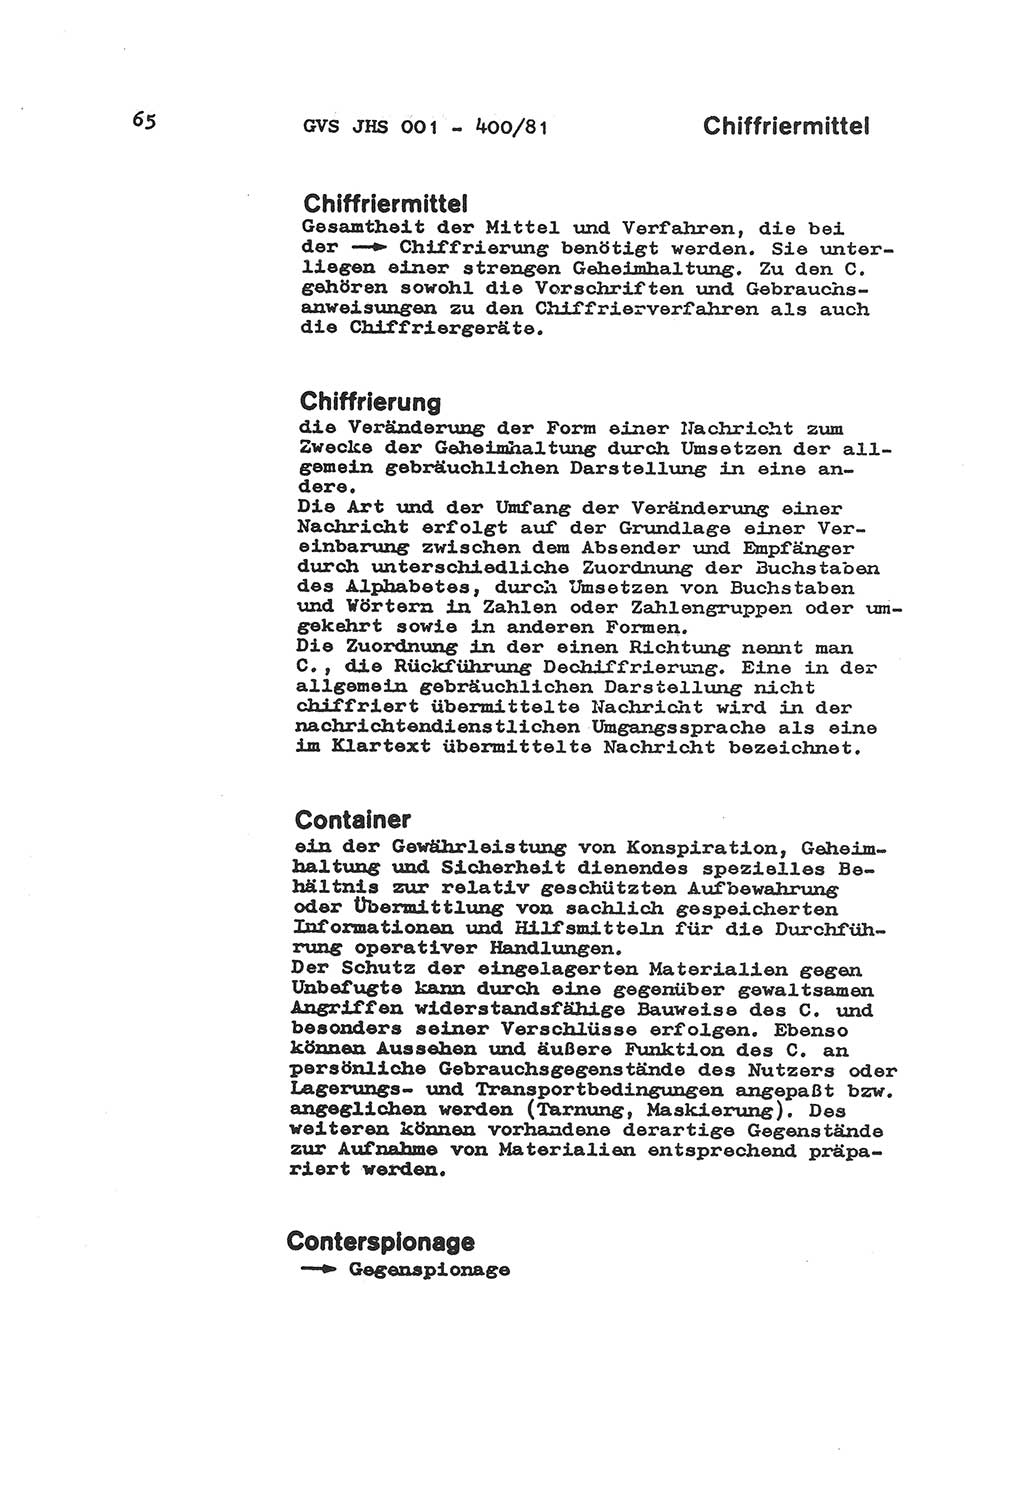 Wörterbuch der politisch-operativen Arbeit, Ministerium für Staatssicherheit (MfS) [Deutsche Demokratische Republik (DDR)], Juristische Hochschule (JHS), Geheime Verschlußsache (GVS) o001-400/81, Potsdam 1985, Blatt 65 (Wb. pol.-op. Arb. MfS DDR JHS GVS o001-400/81 1985, Bl. 65)